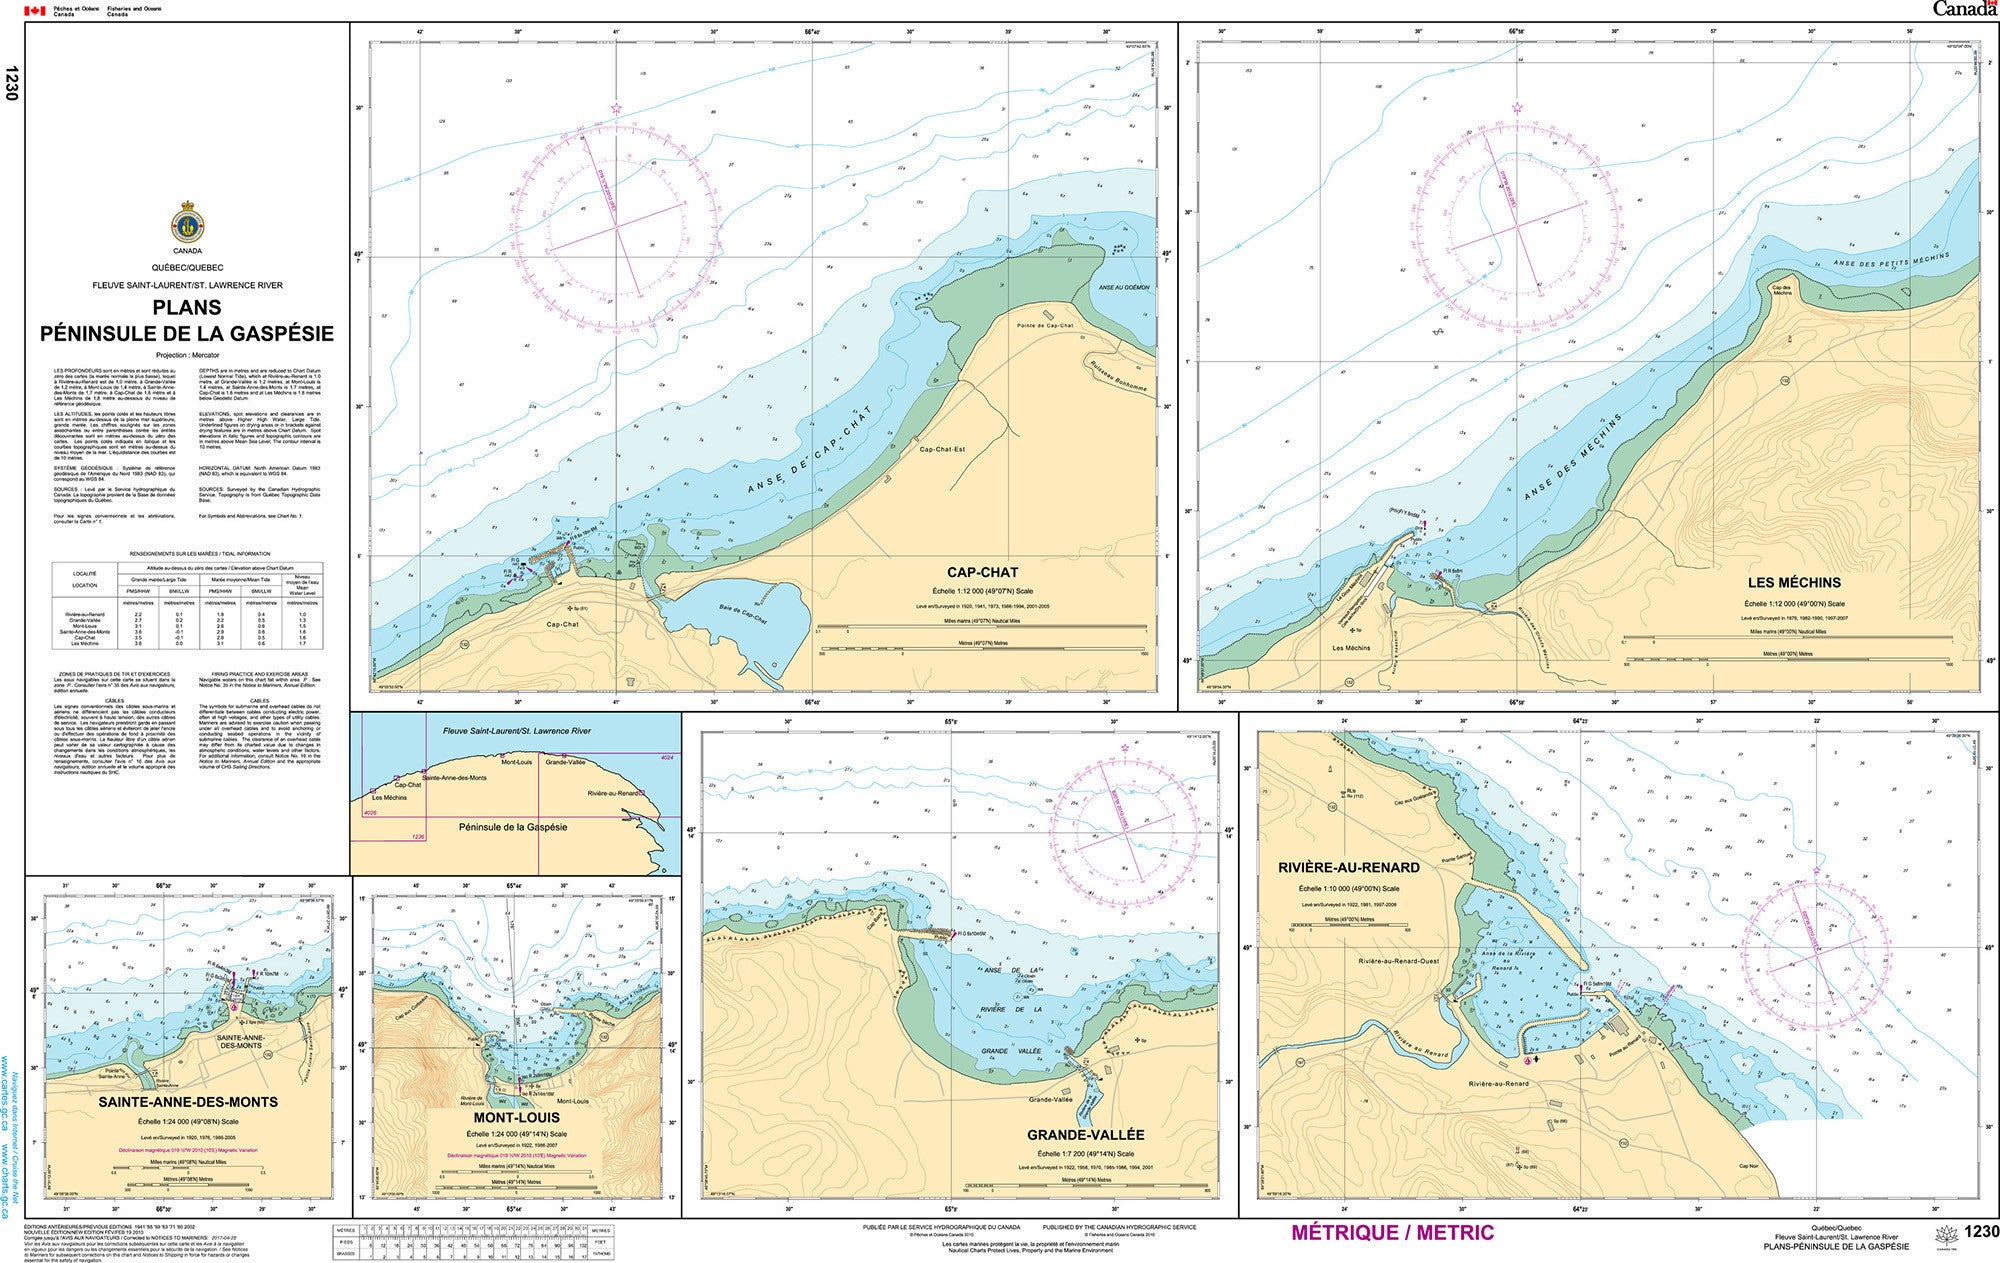 Canadian Hydrographic Service Nautical Chart CHS1230: Plans-Péninsule de la Gaspésie